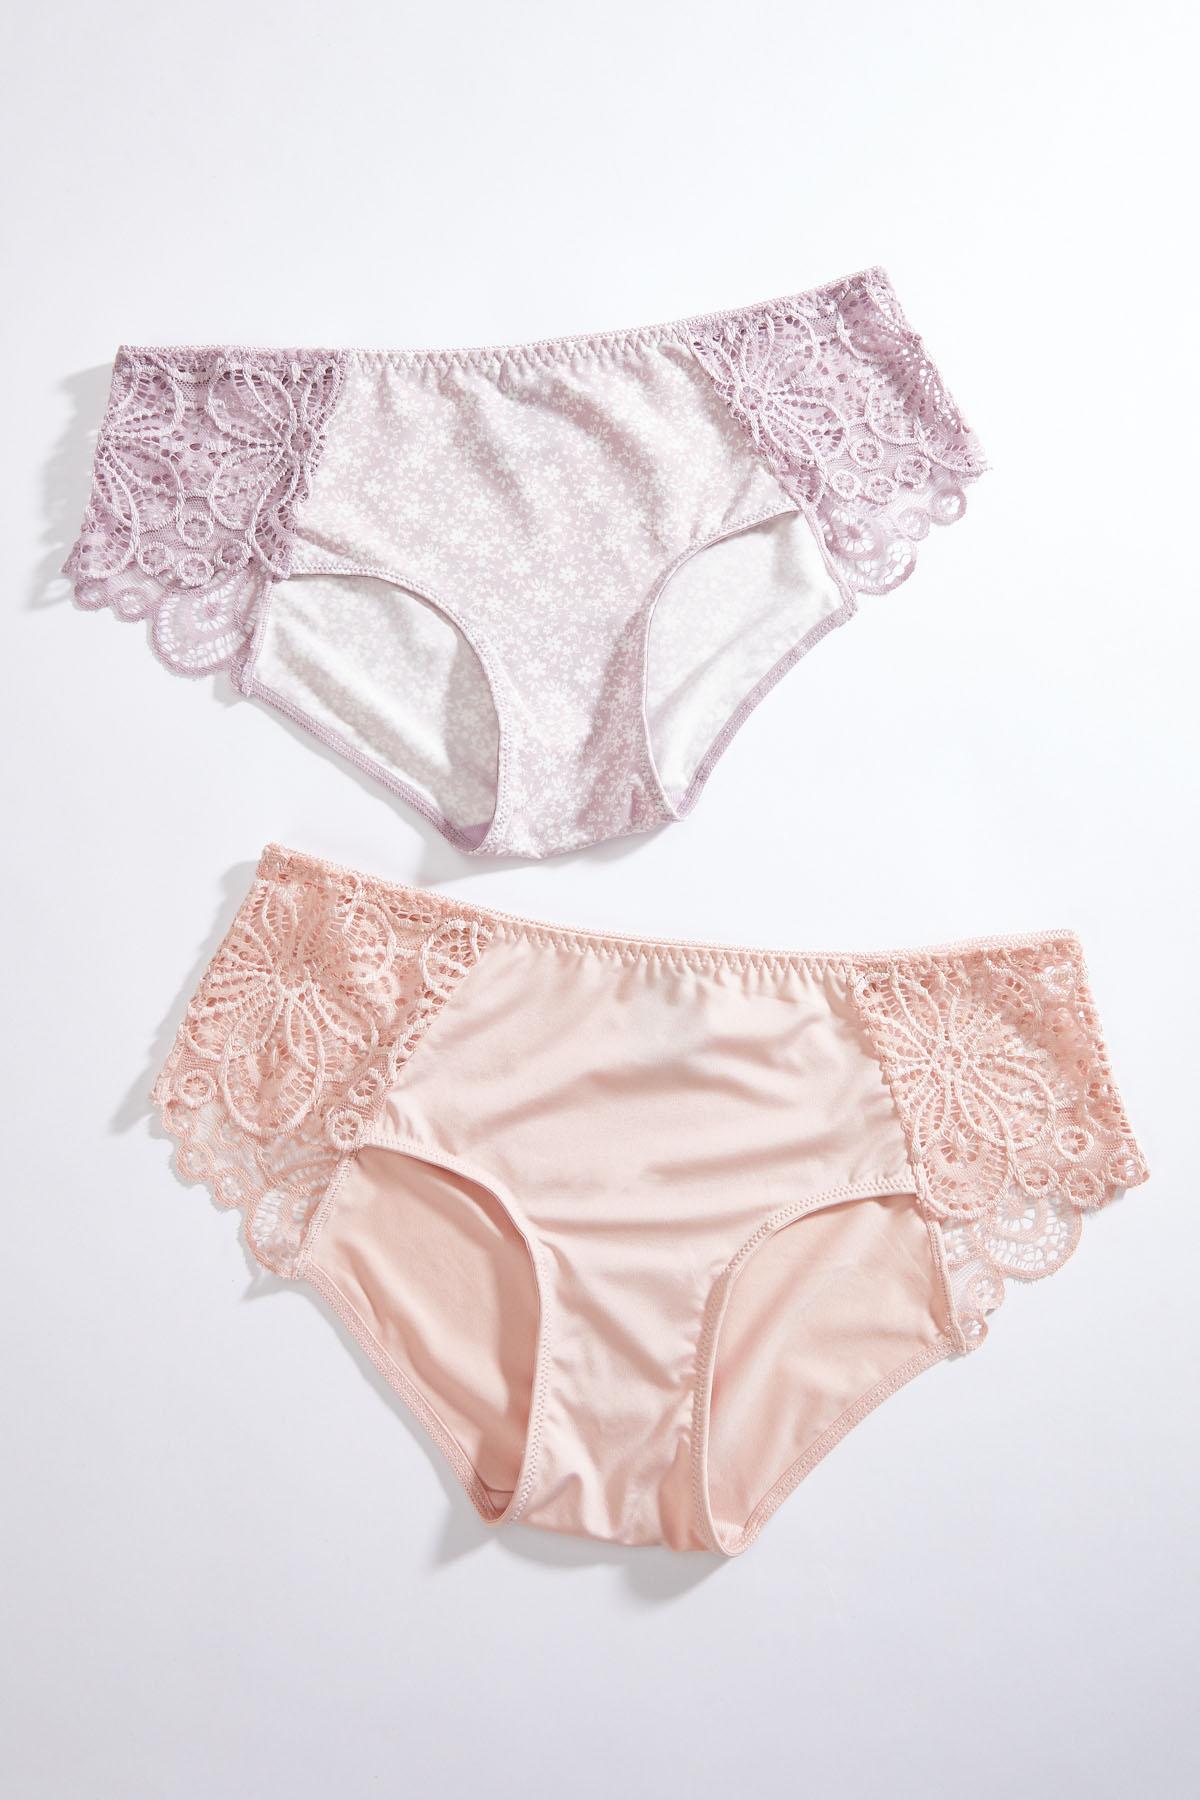 Plus Size Blossom Lace Panty Set